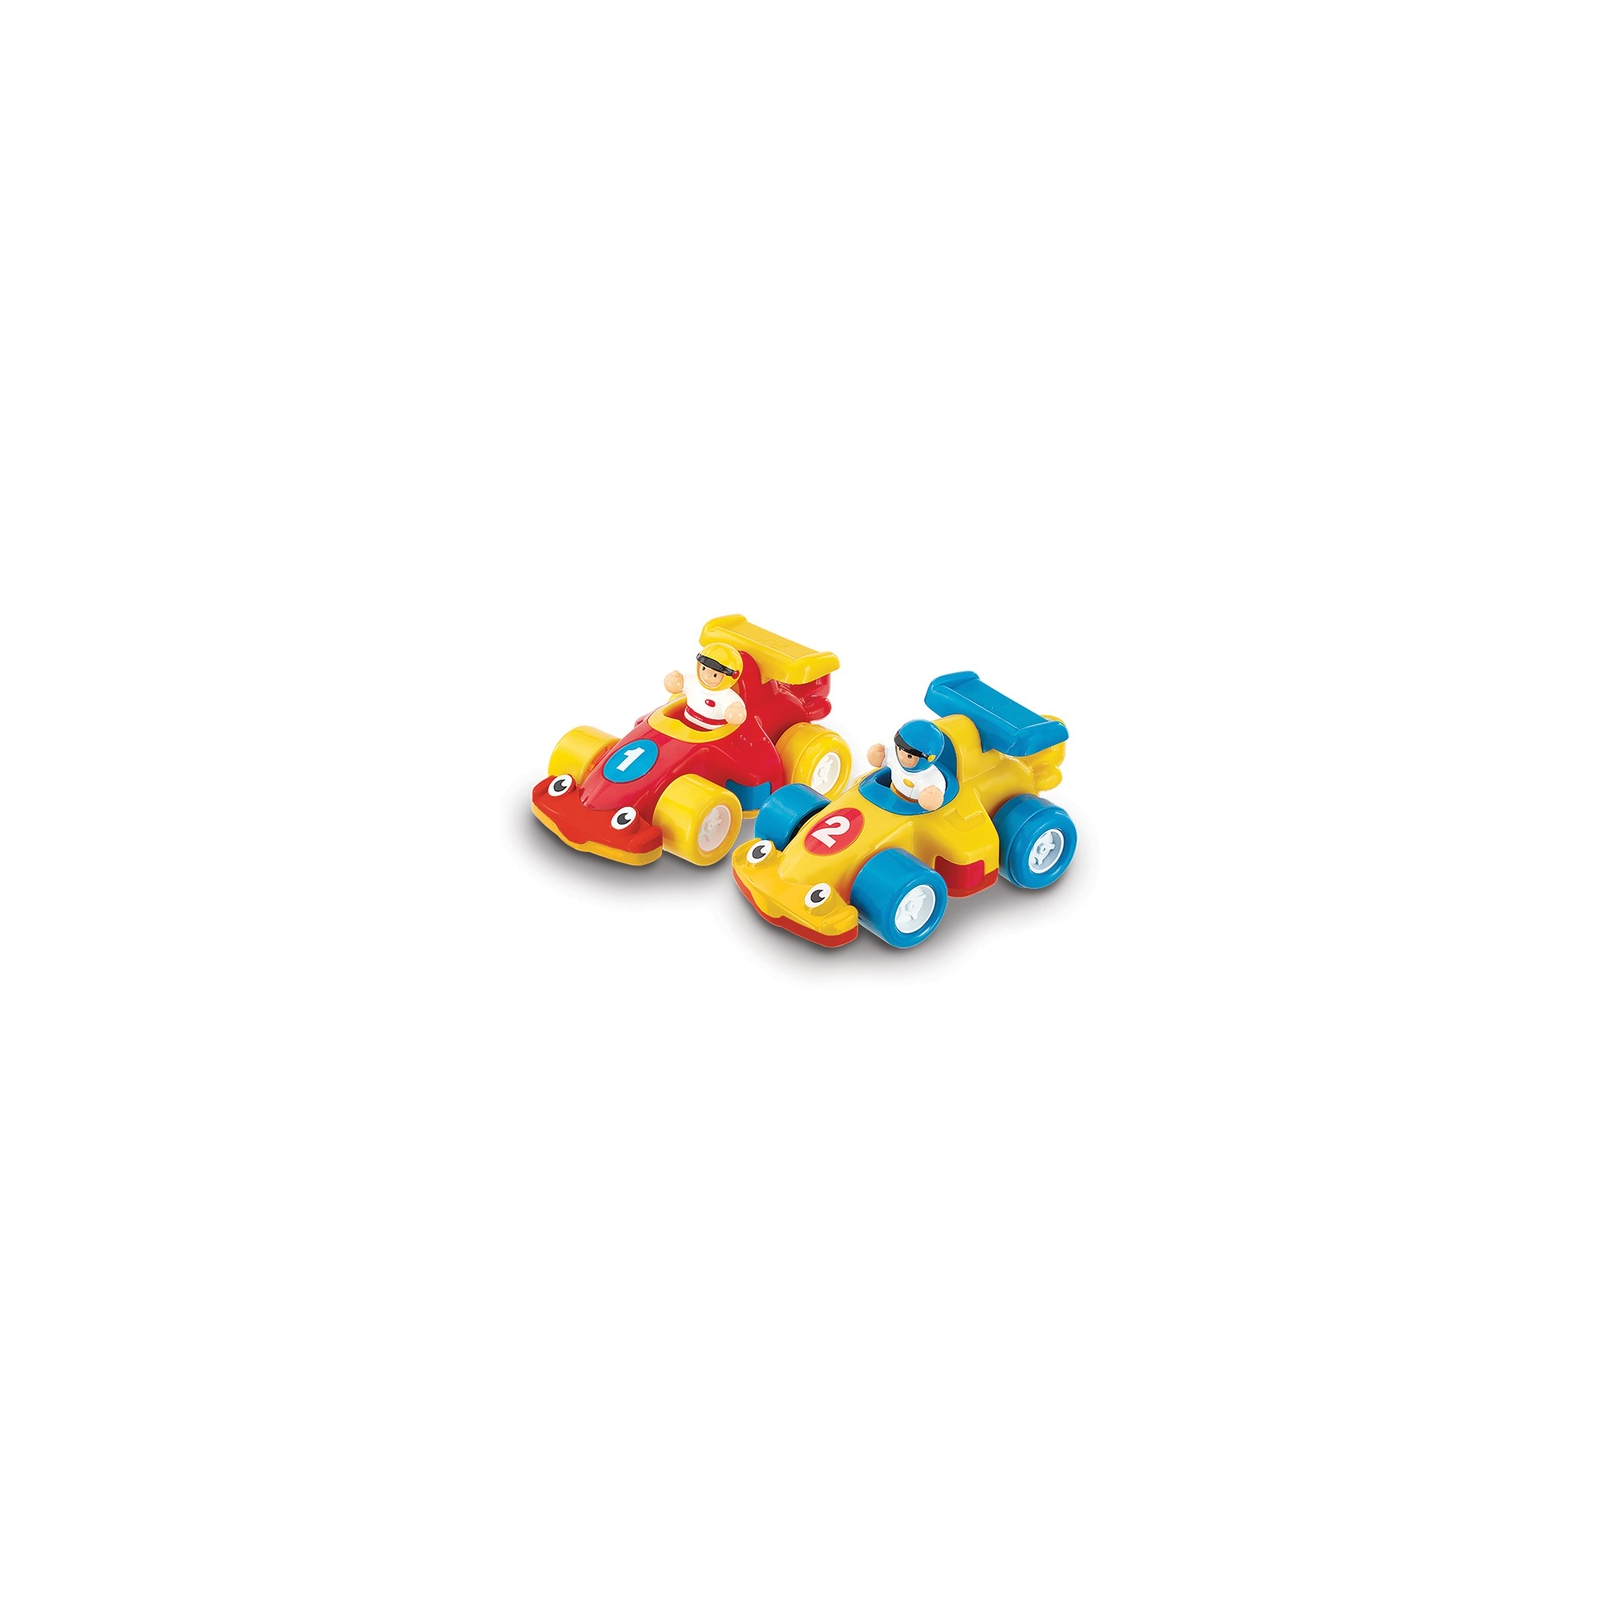 Розвиваюча іграшка Wow Toys Турбоблизнюки (06060)